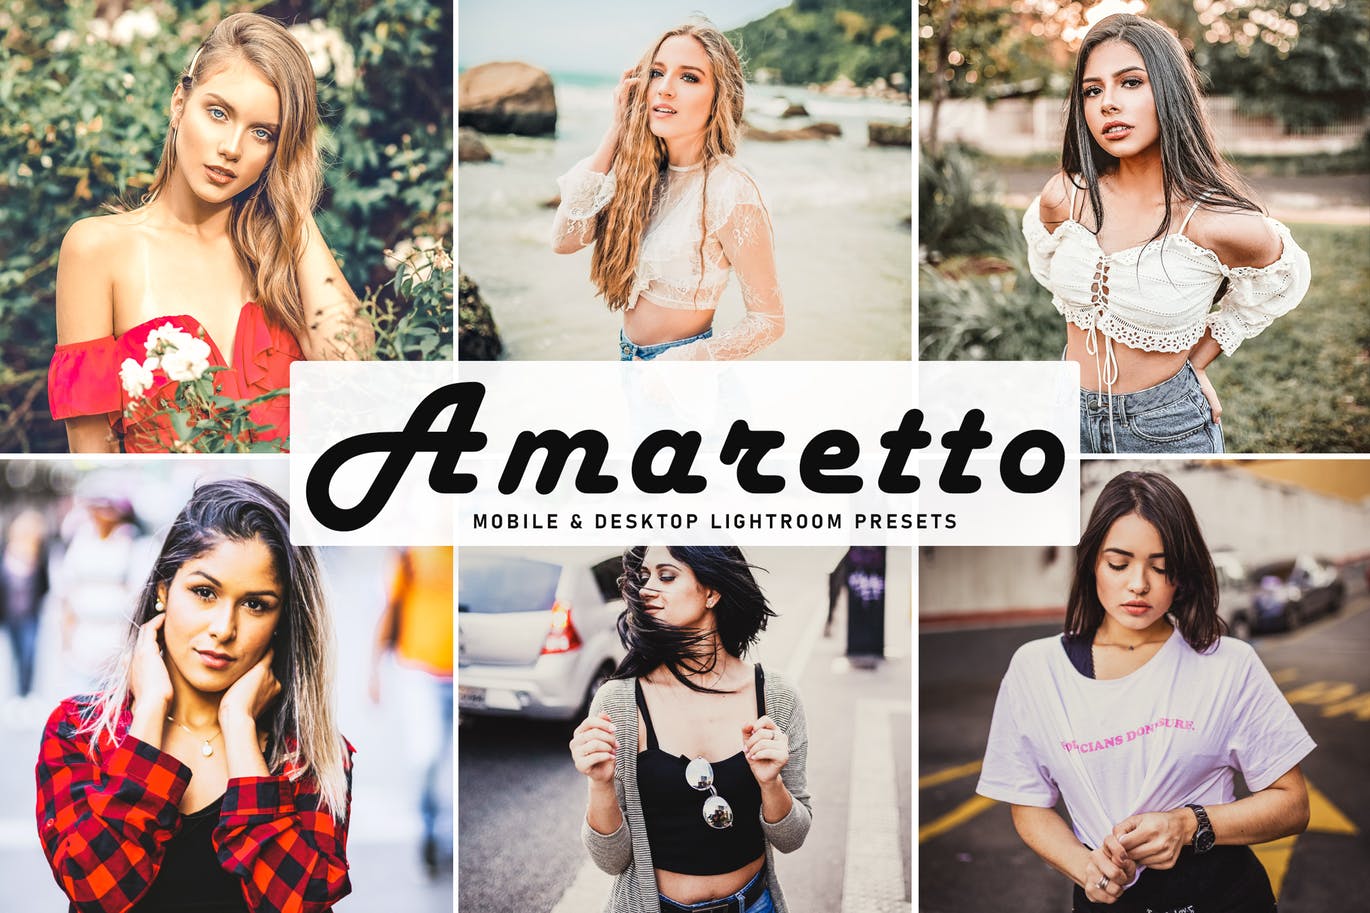 Amaretto Mobile & Desktop Lightroom Presets